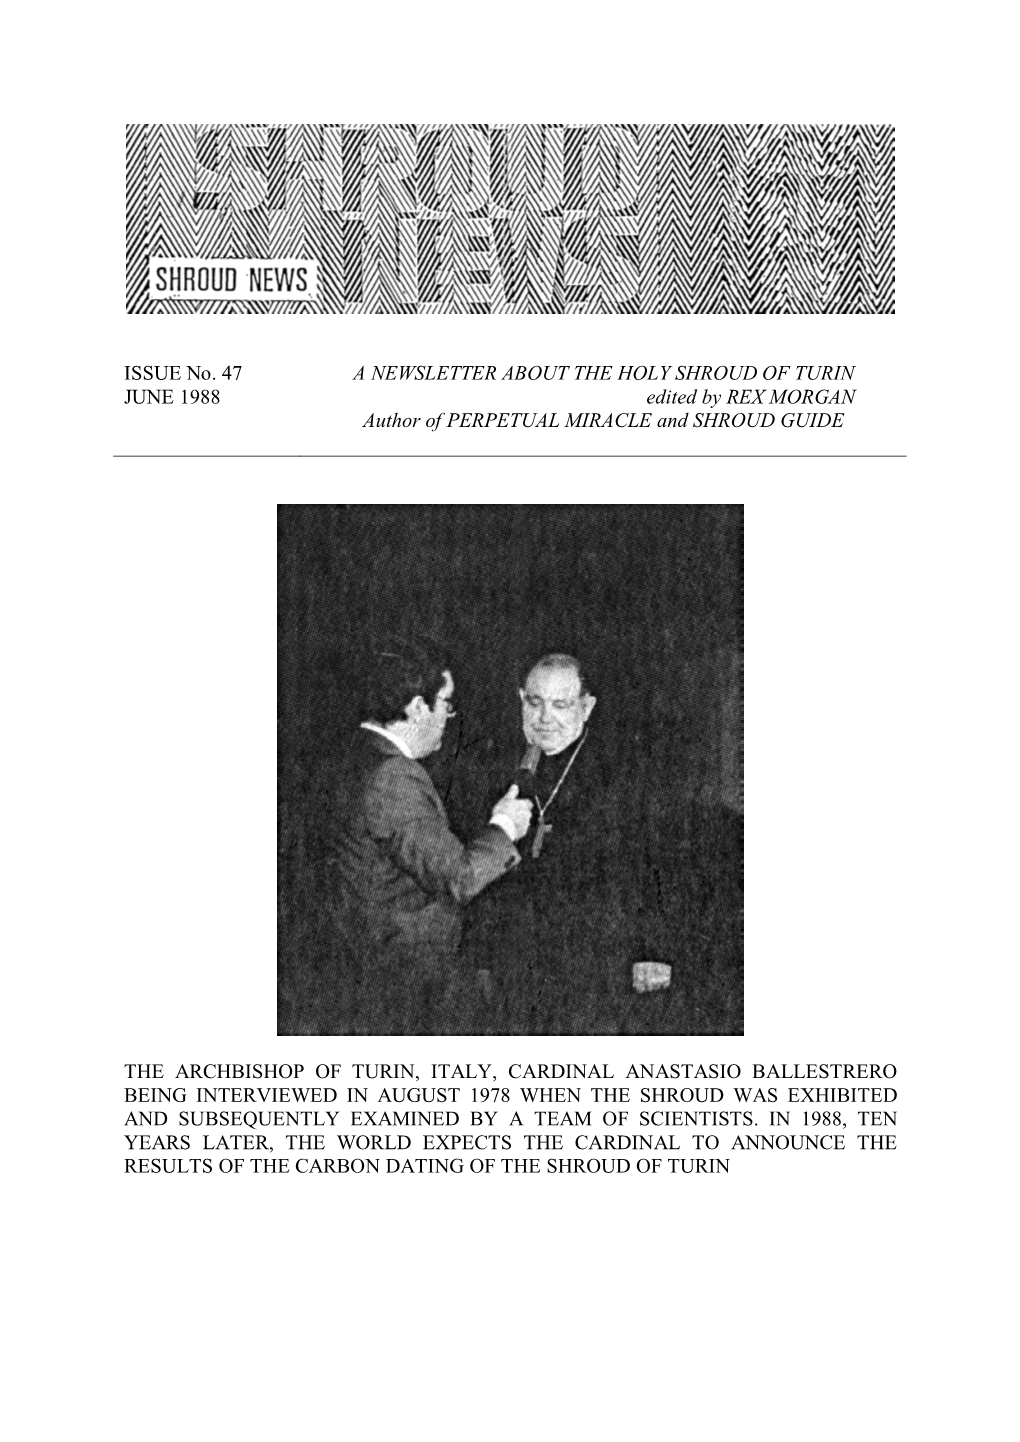 Shroud News Issue #47 June 1988